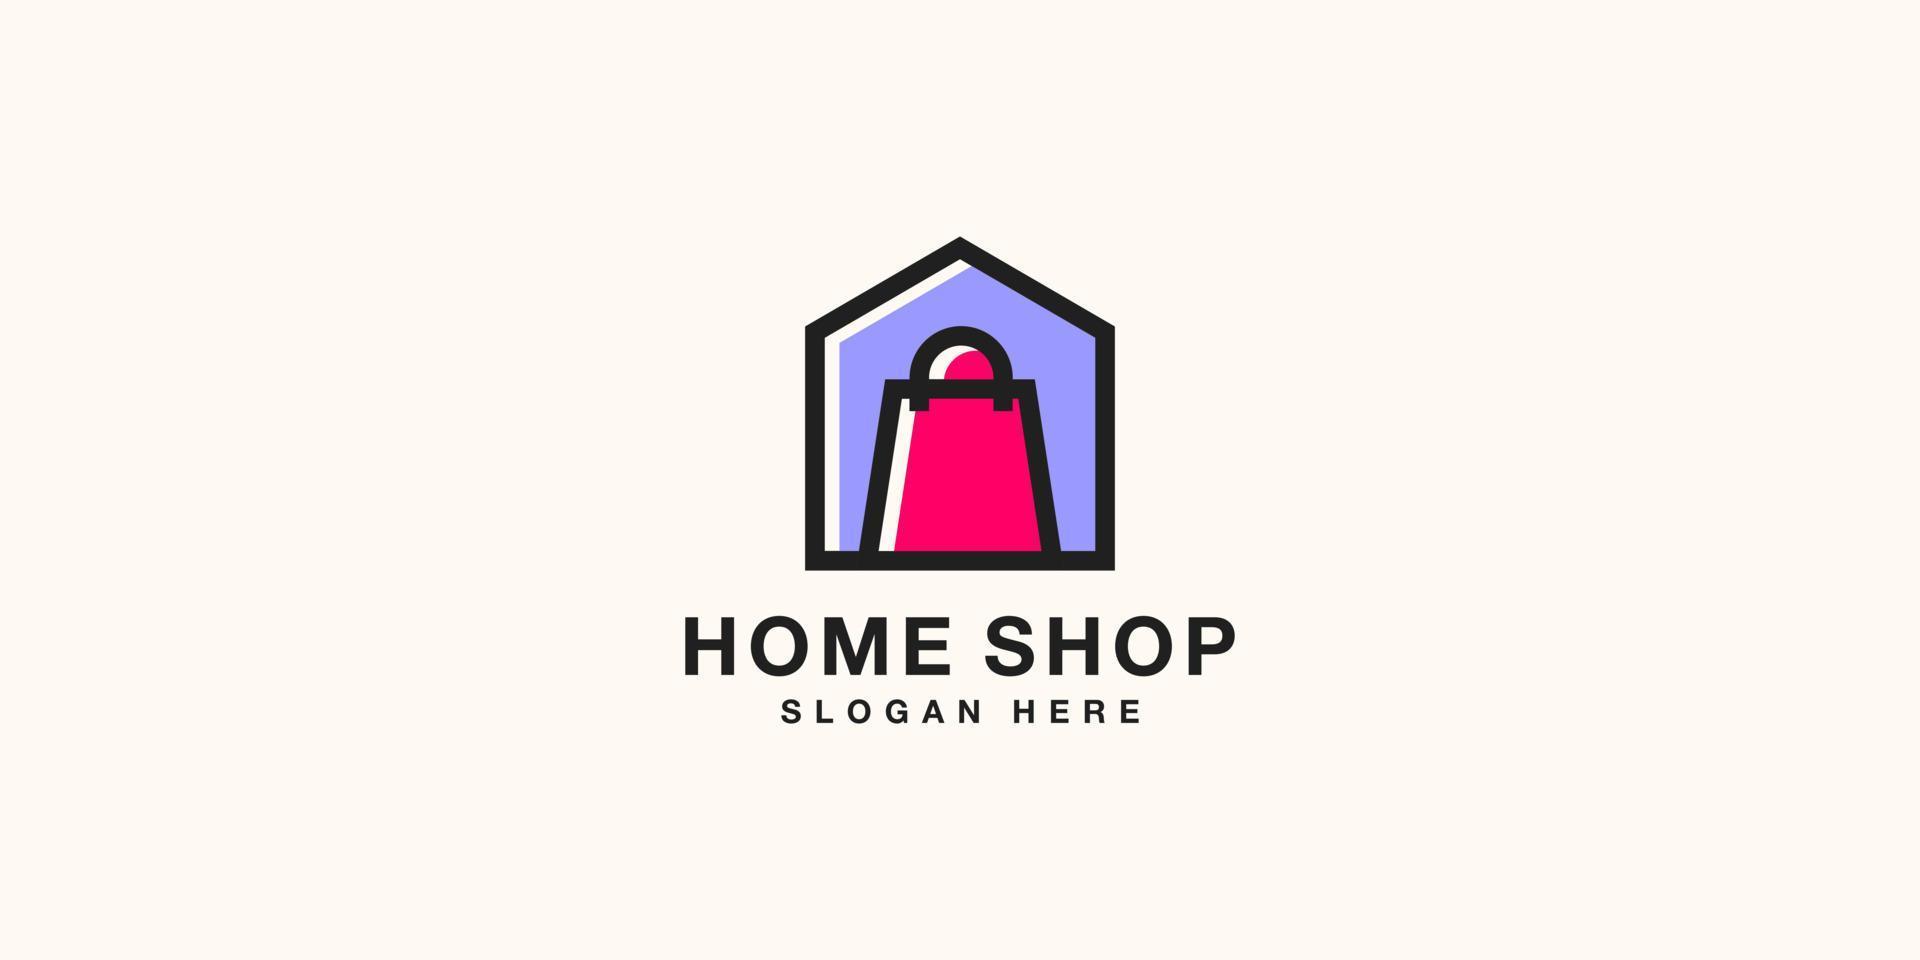 disegno vettoriale del logo del negozio di casa